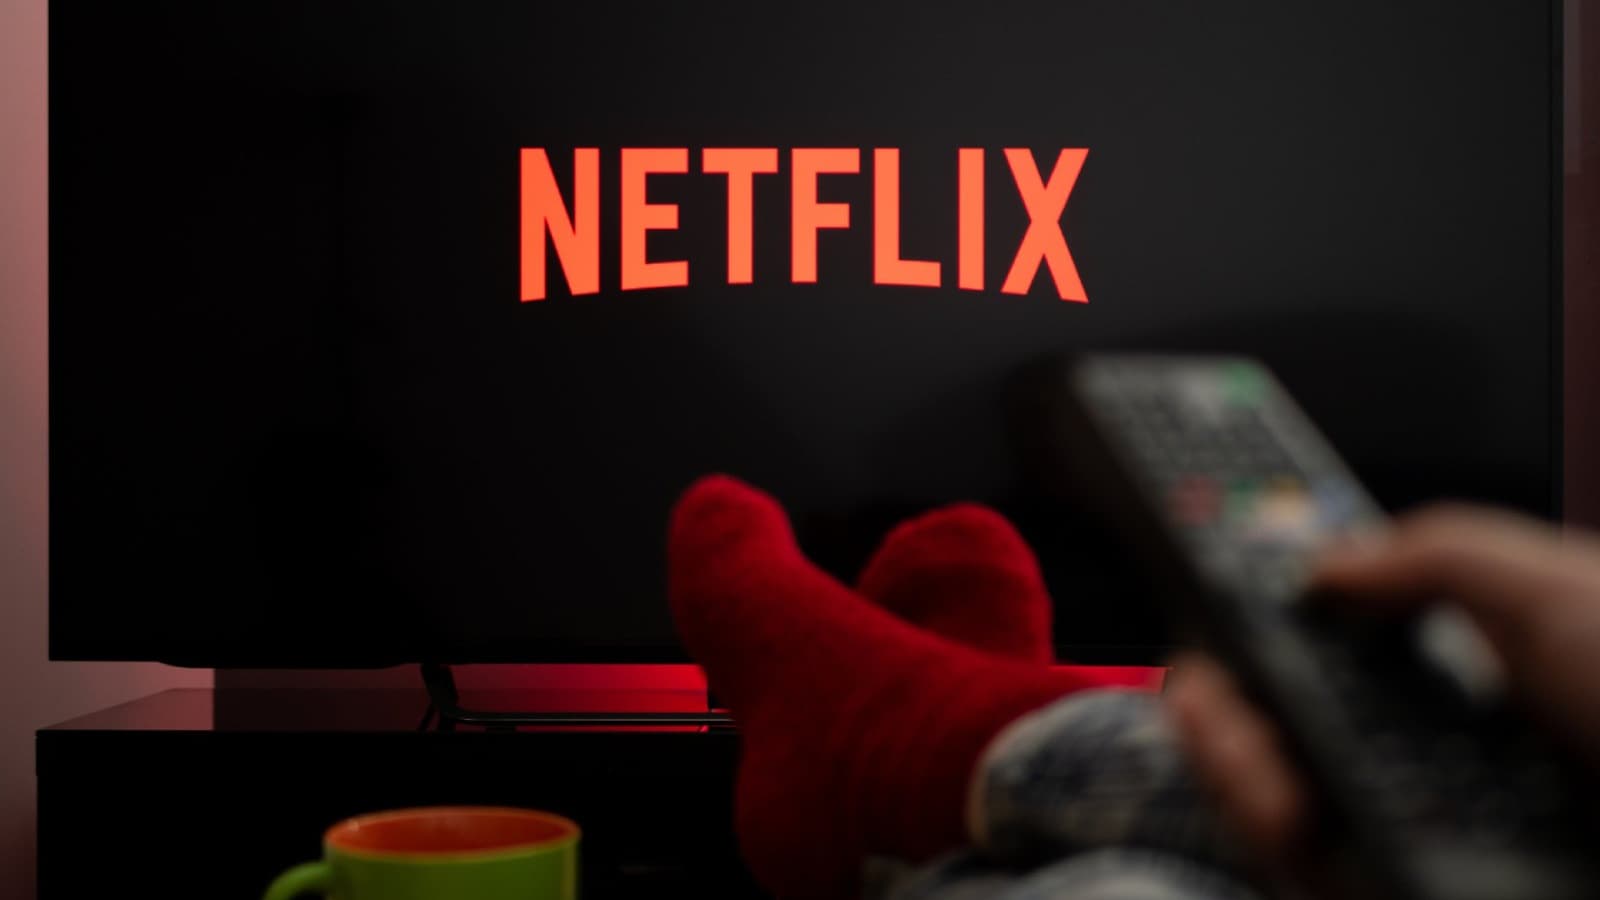 Profitez de nombreuses séries, films... et feux de cheminée grâce à Netflix